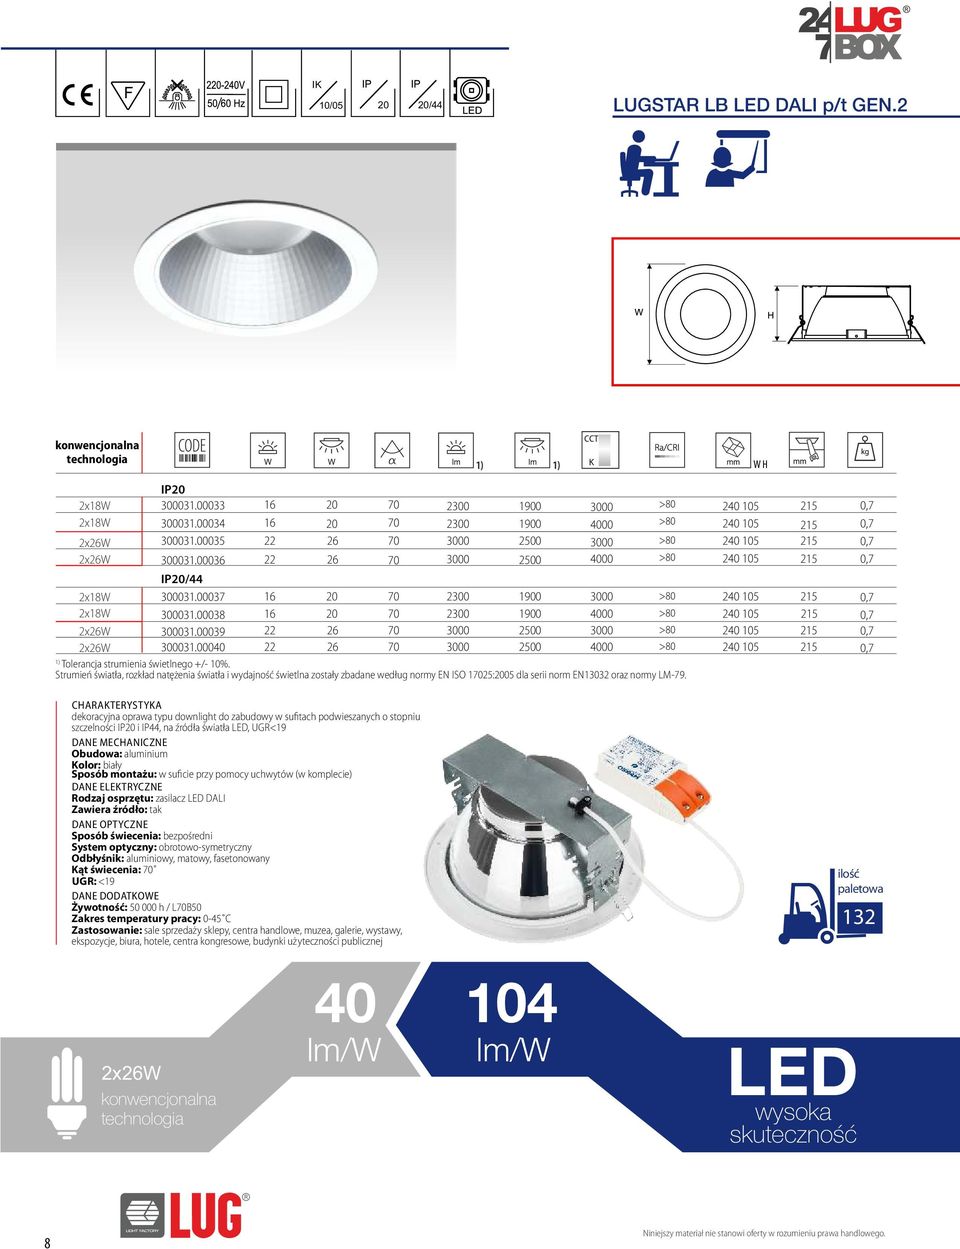 strumienia świetlnego +/- 10%. Strumień światła, rozkład natężenia światła i wydajność świetlna zostały zbadane według normy EN ISO 125:2005 dla serii norm EN13032 oraz normy LM-79.